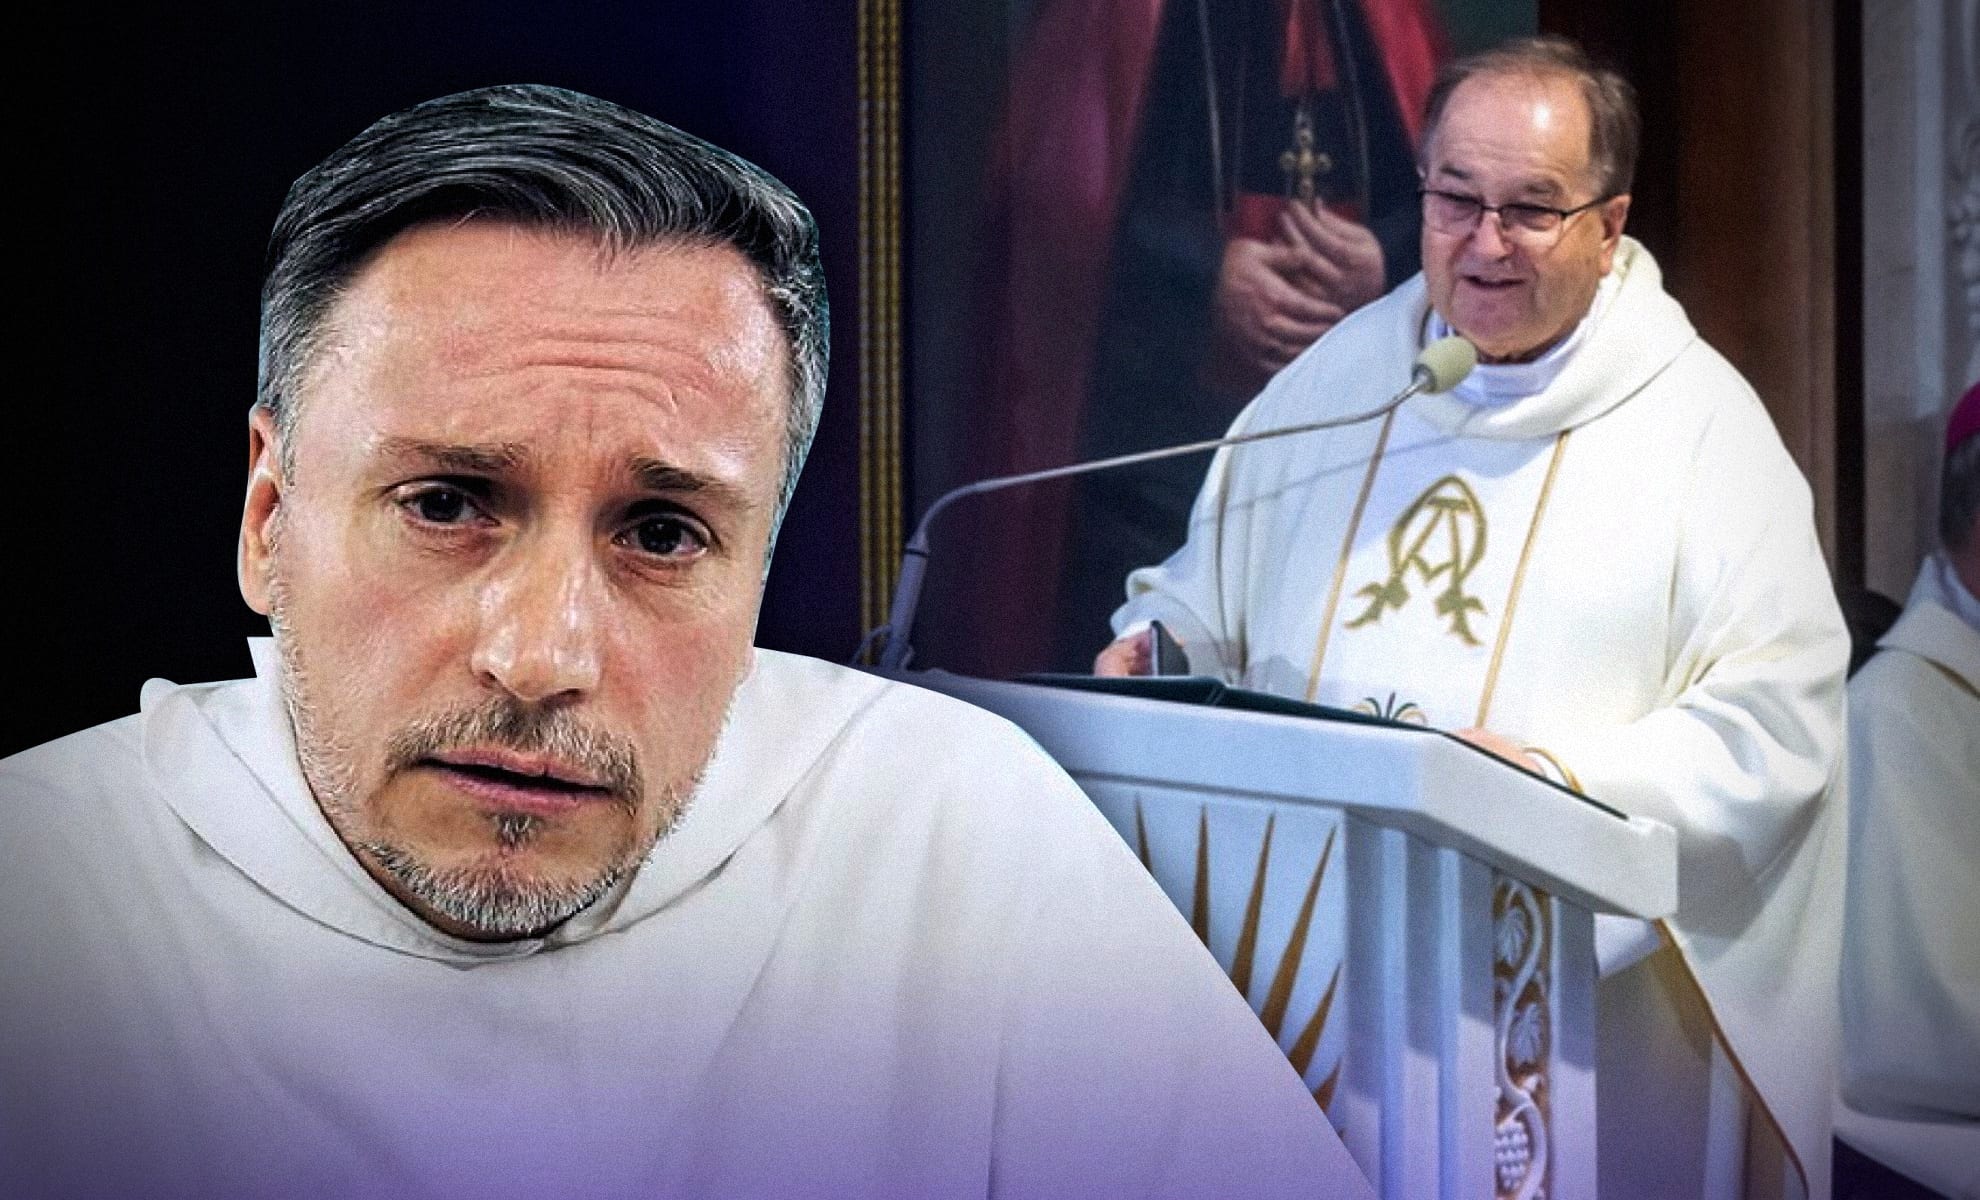 – Biskupi w Toruniu ZDRADZILI CHRYSTUSA! Ich milczenie jest nie-Boże – ks. Maciej Biskup w IPP